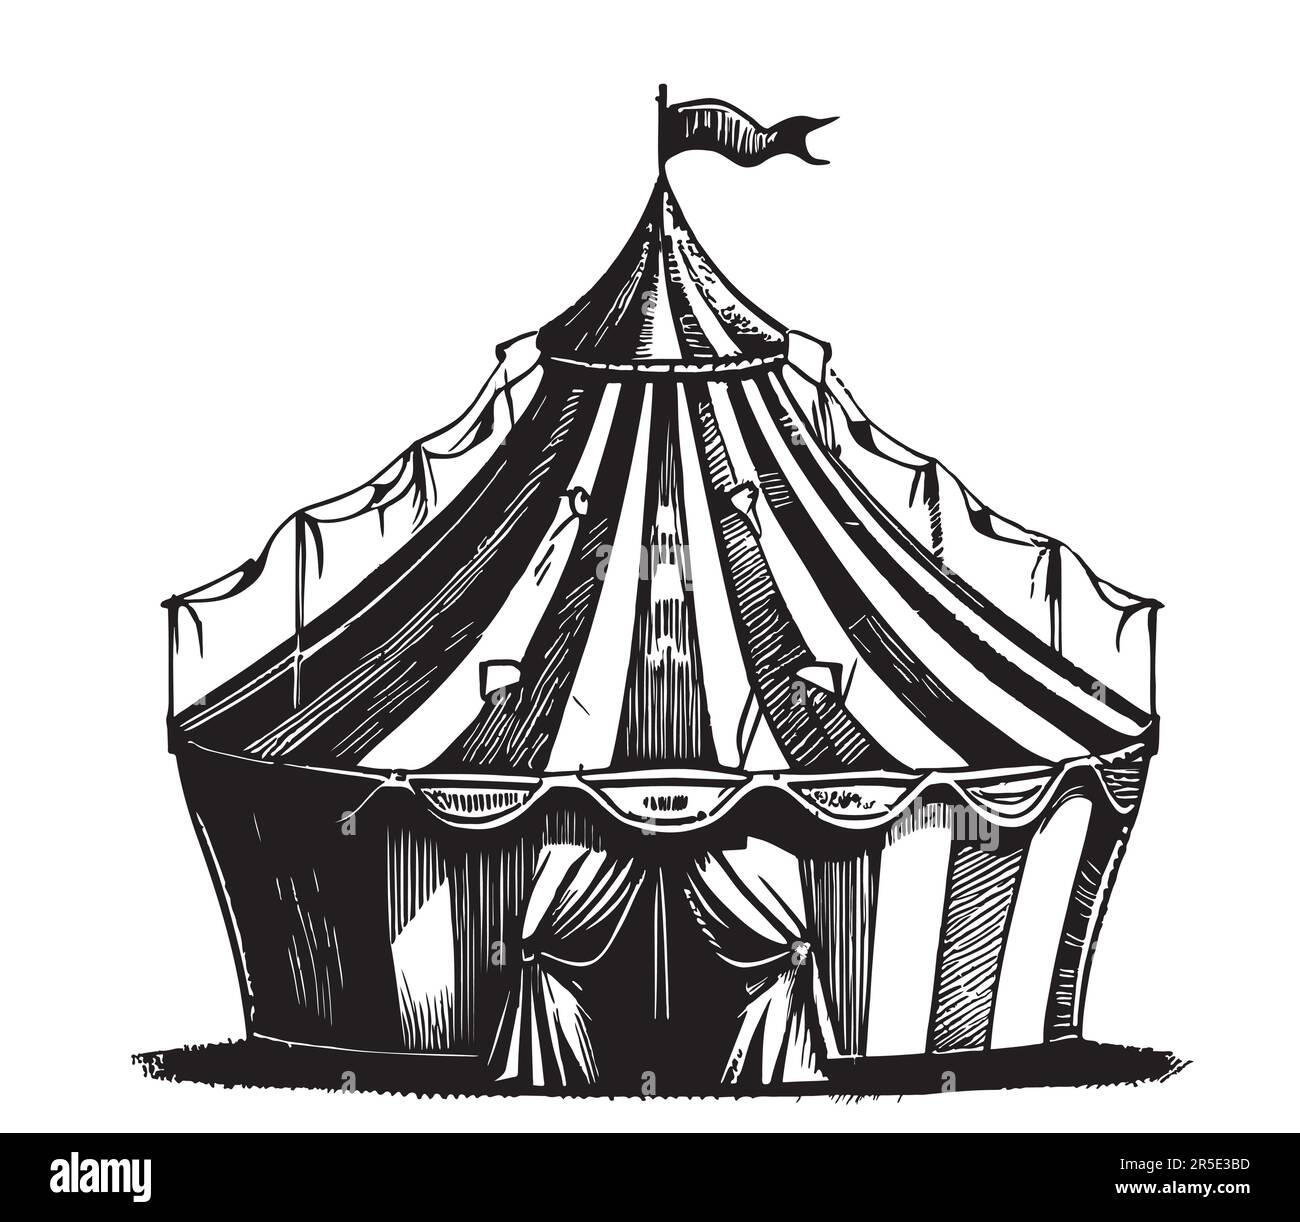 Croquis de tente de cirque dessiné à la main dans une illustration de style doodle Illustration de Vecteur